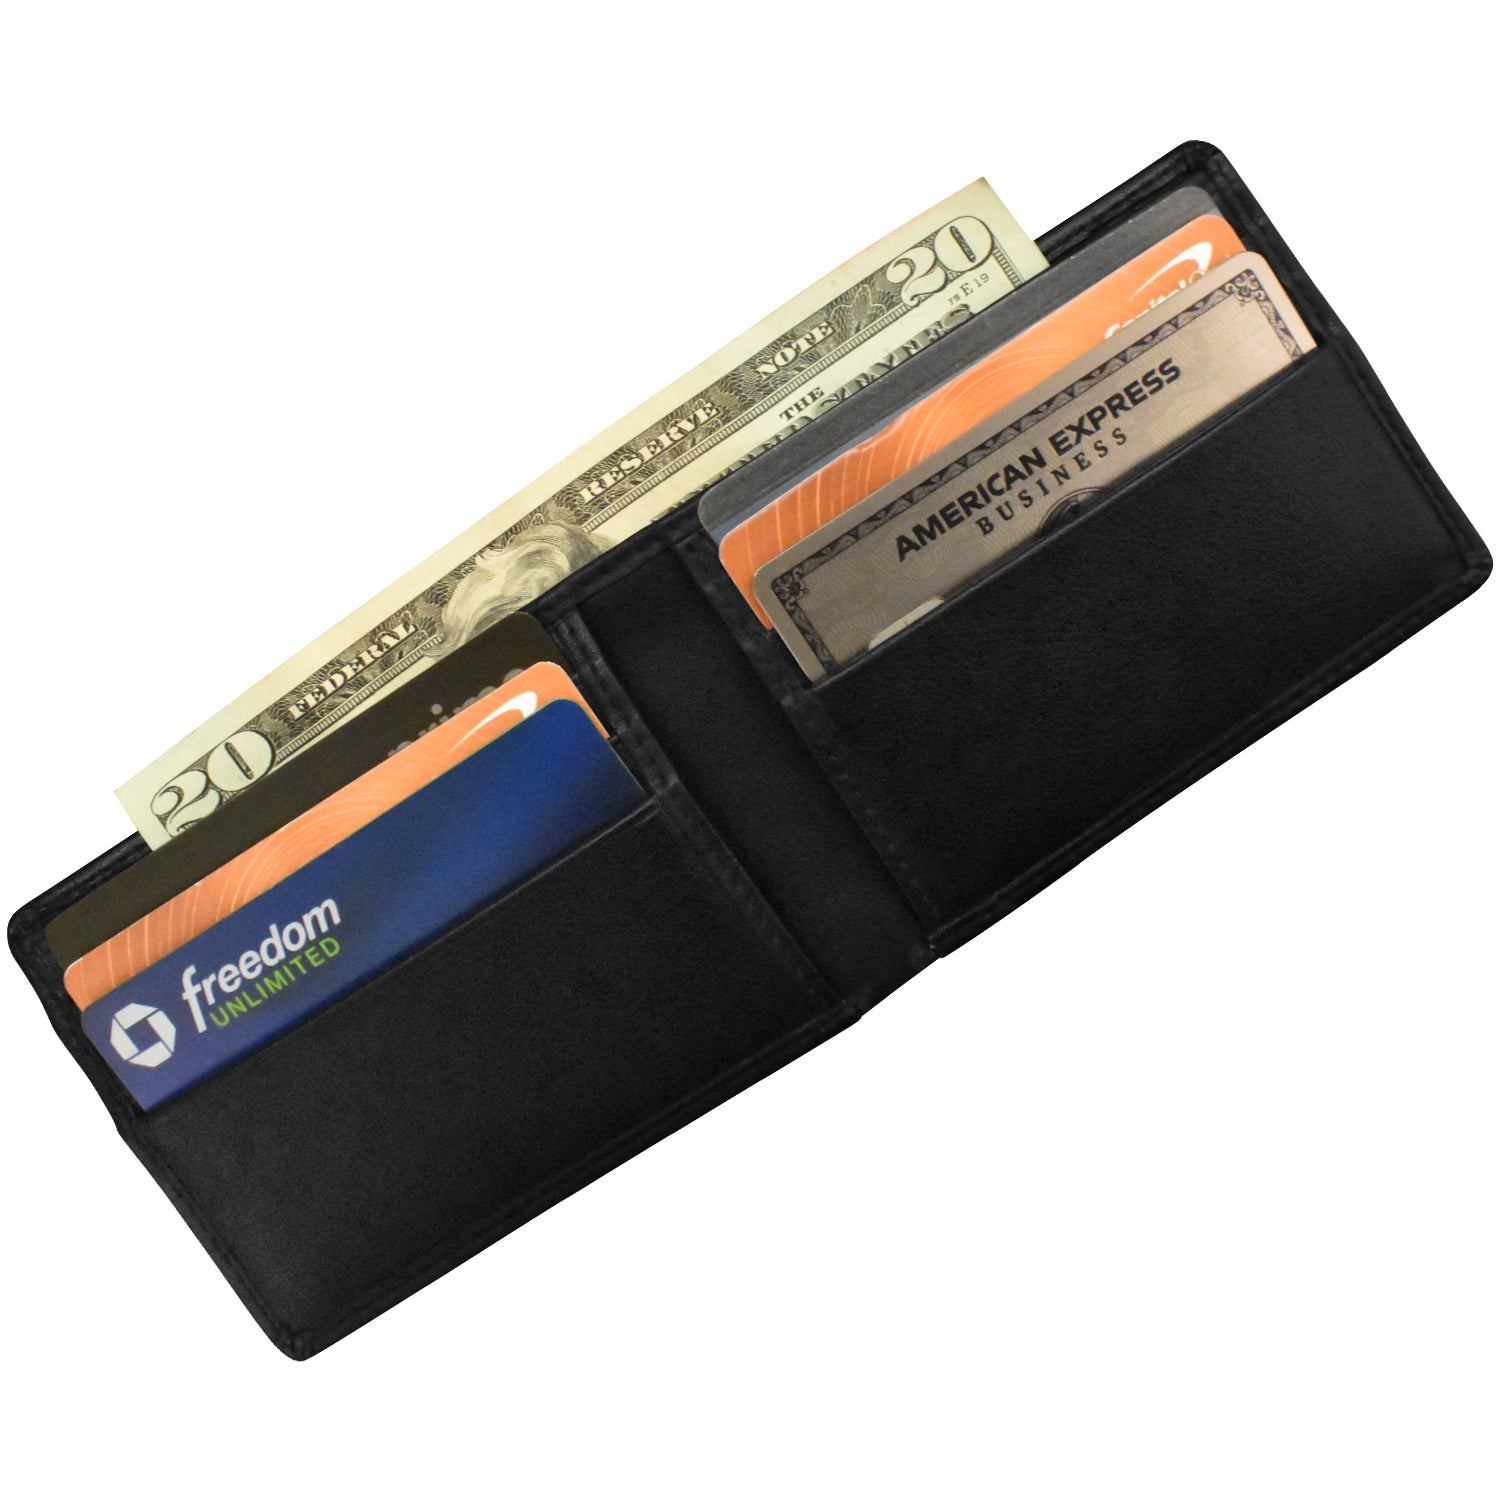 Men's Bifold Wallet with Back Slip Pocket